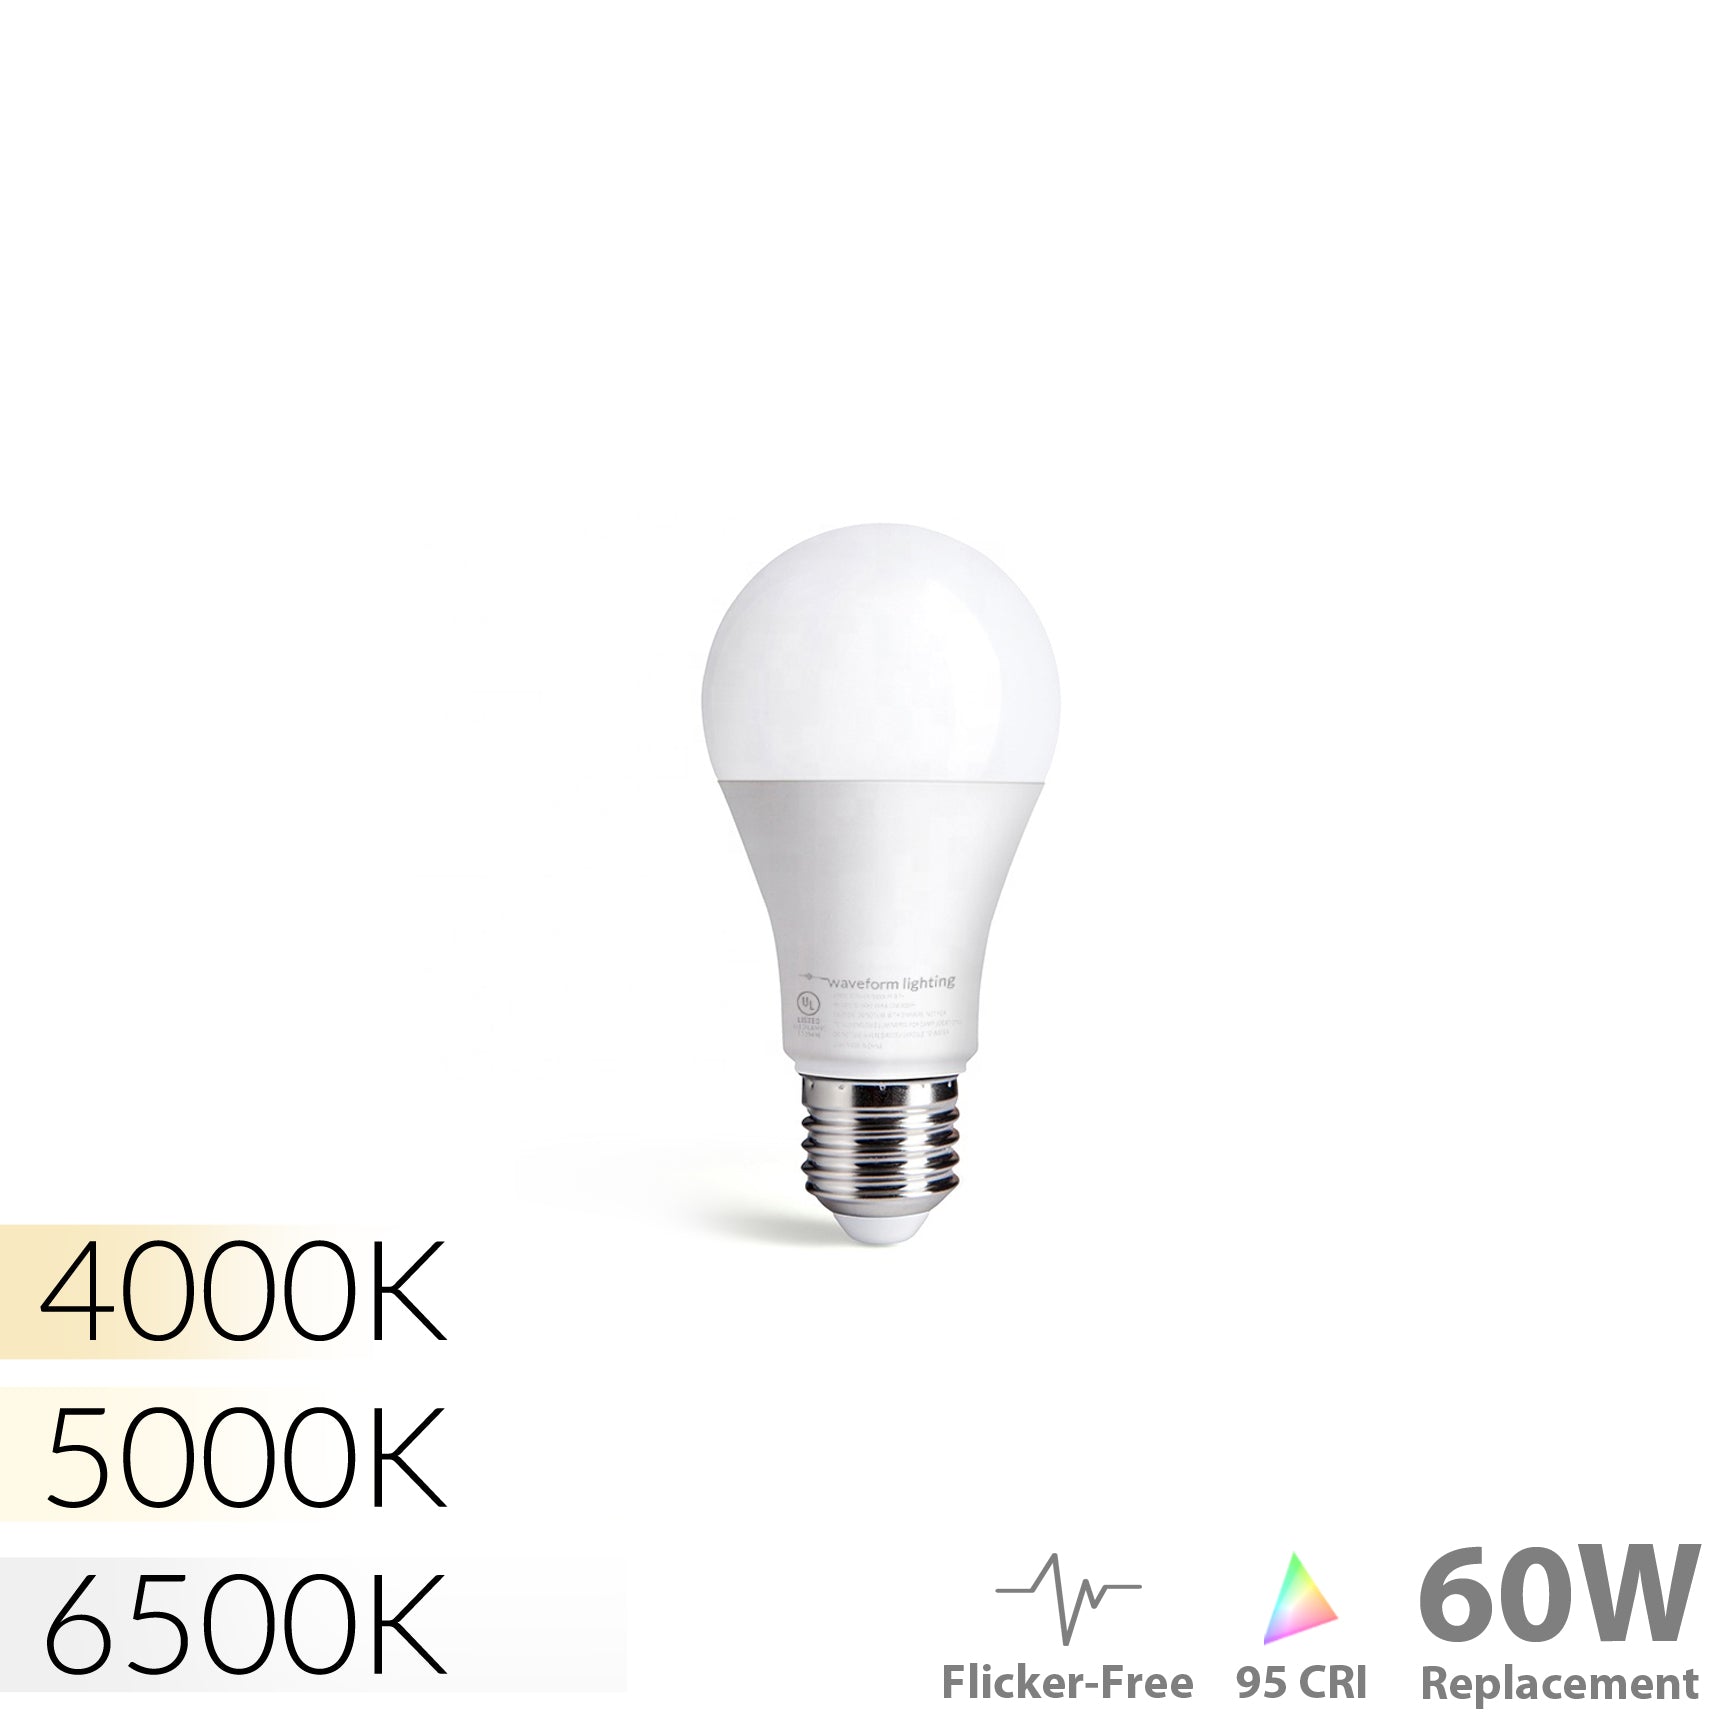 Gu10 led ampoule 4000k blanc naturel,equivalent 60w,non dimmable